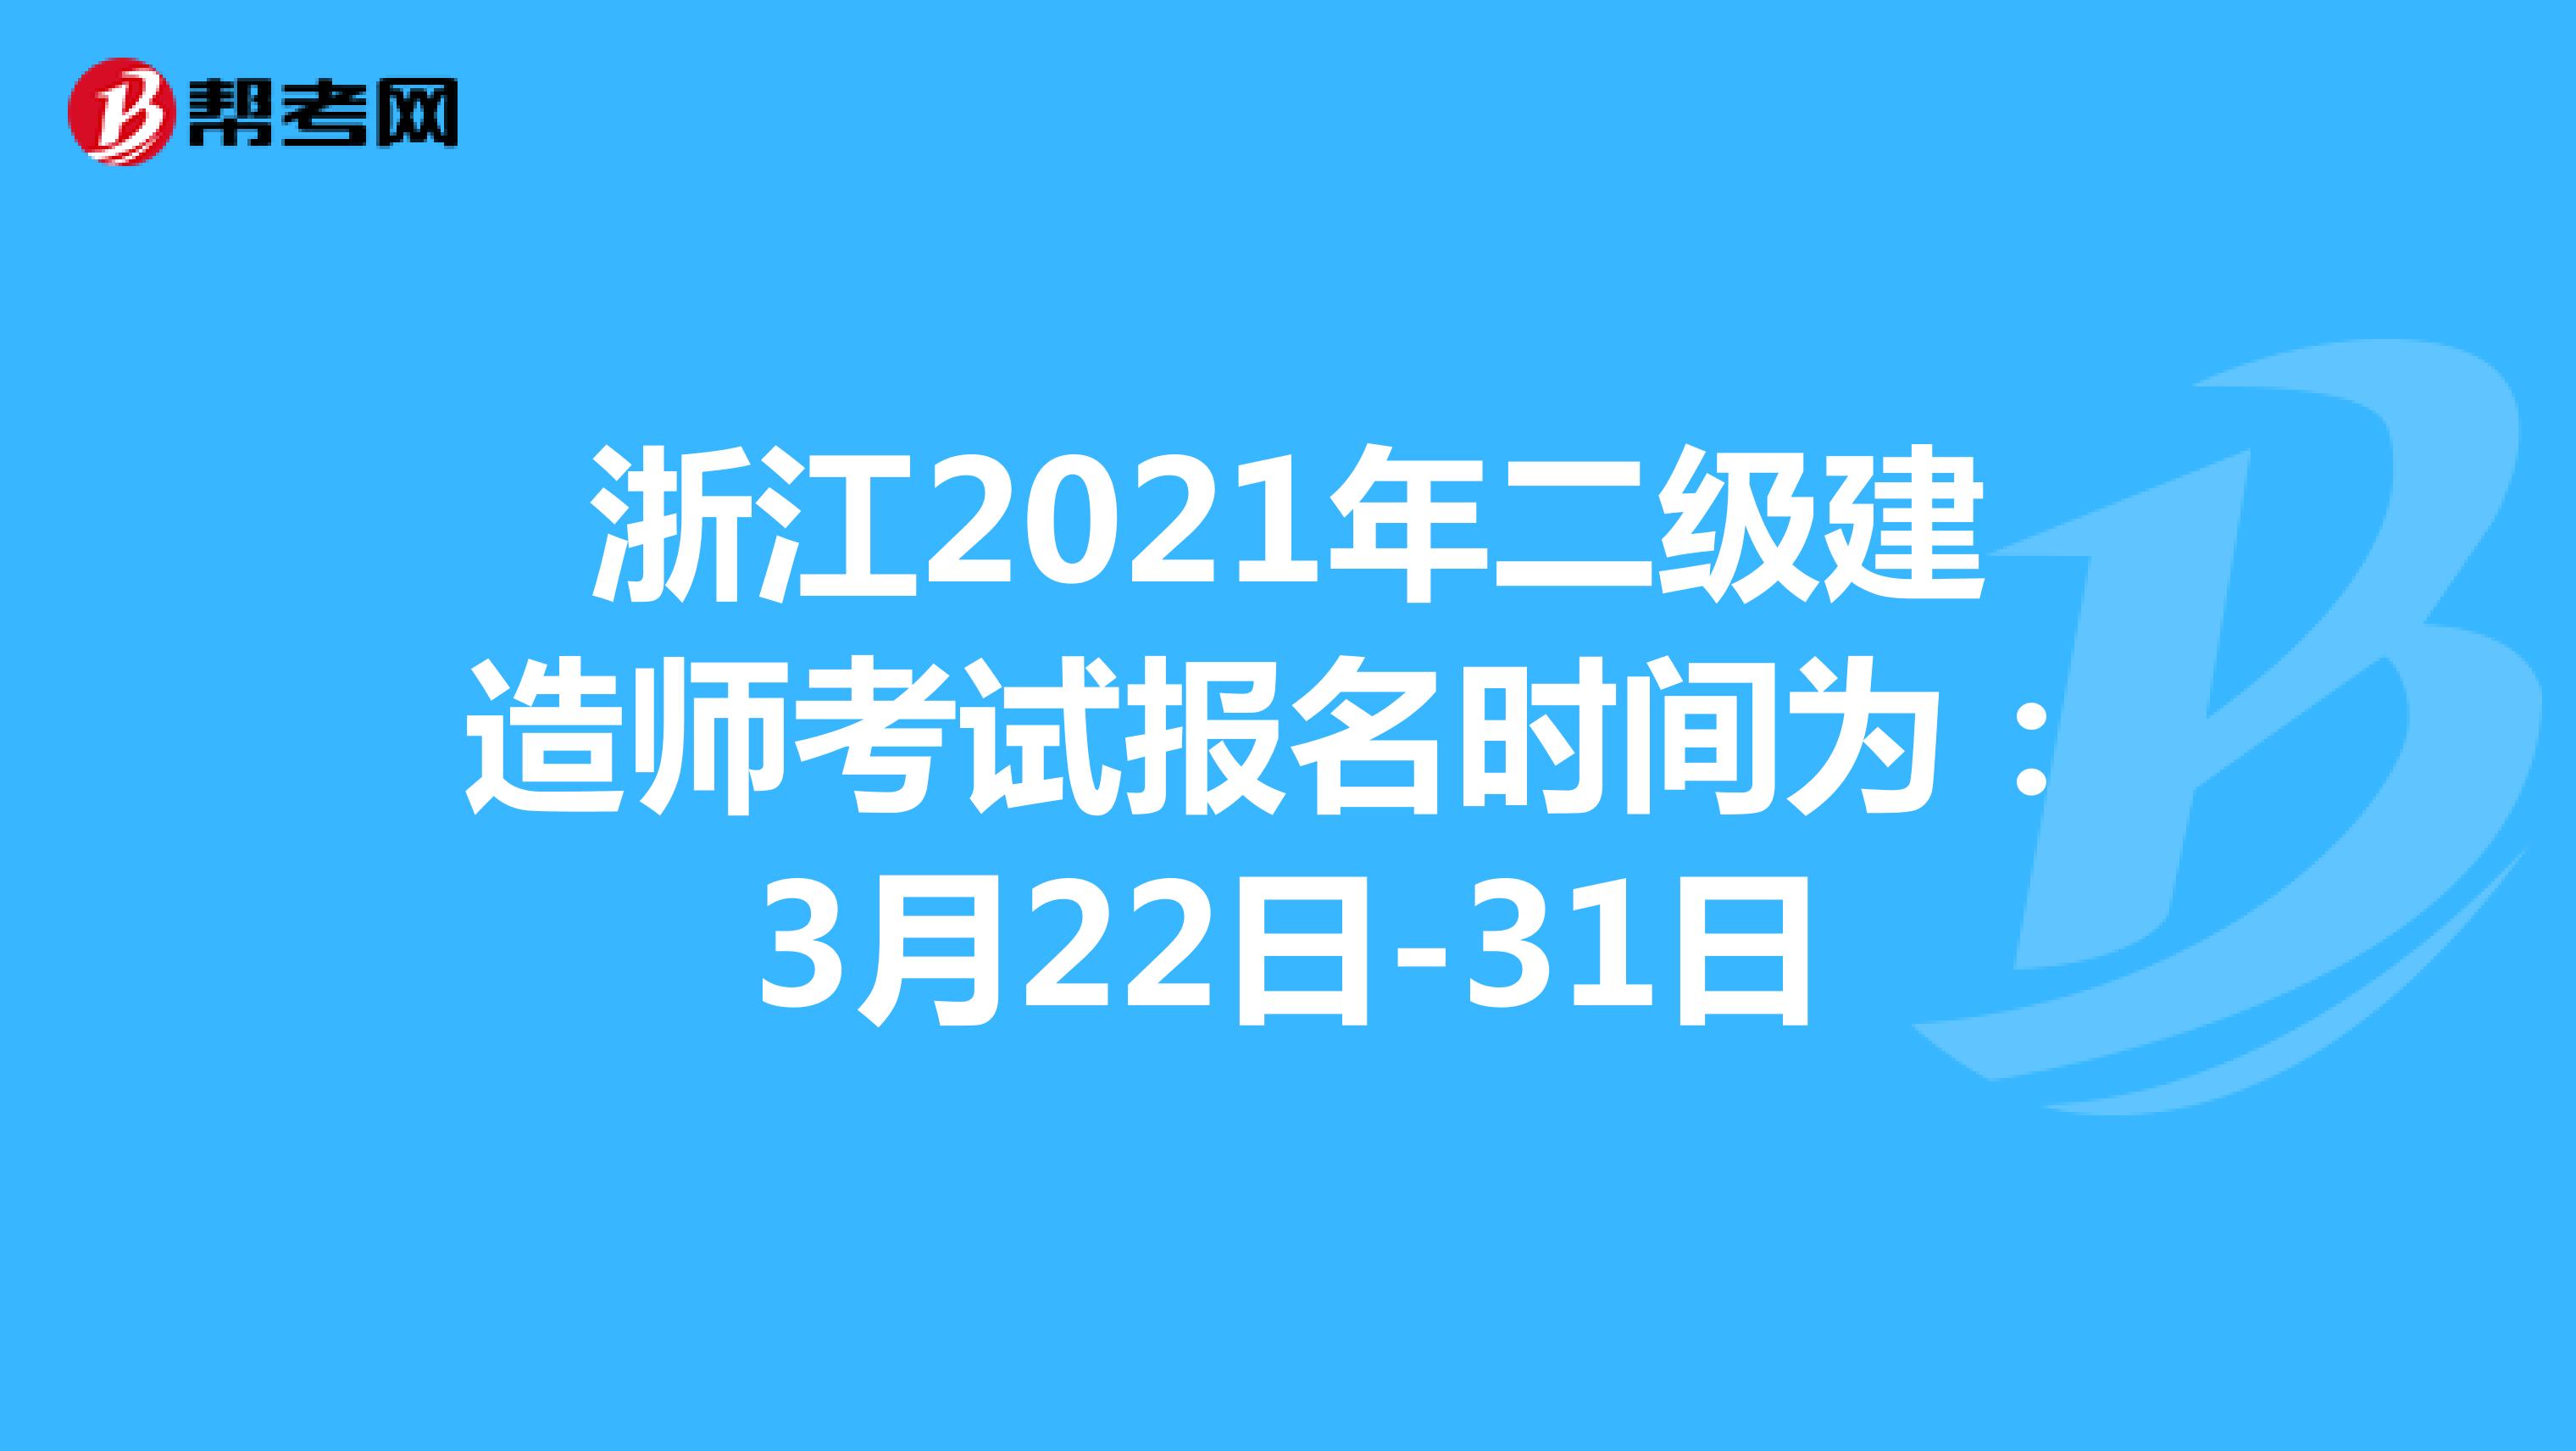 浙江2021年二级建造师考试报名时间为：3月22日-31日